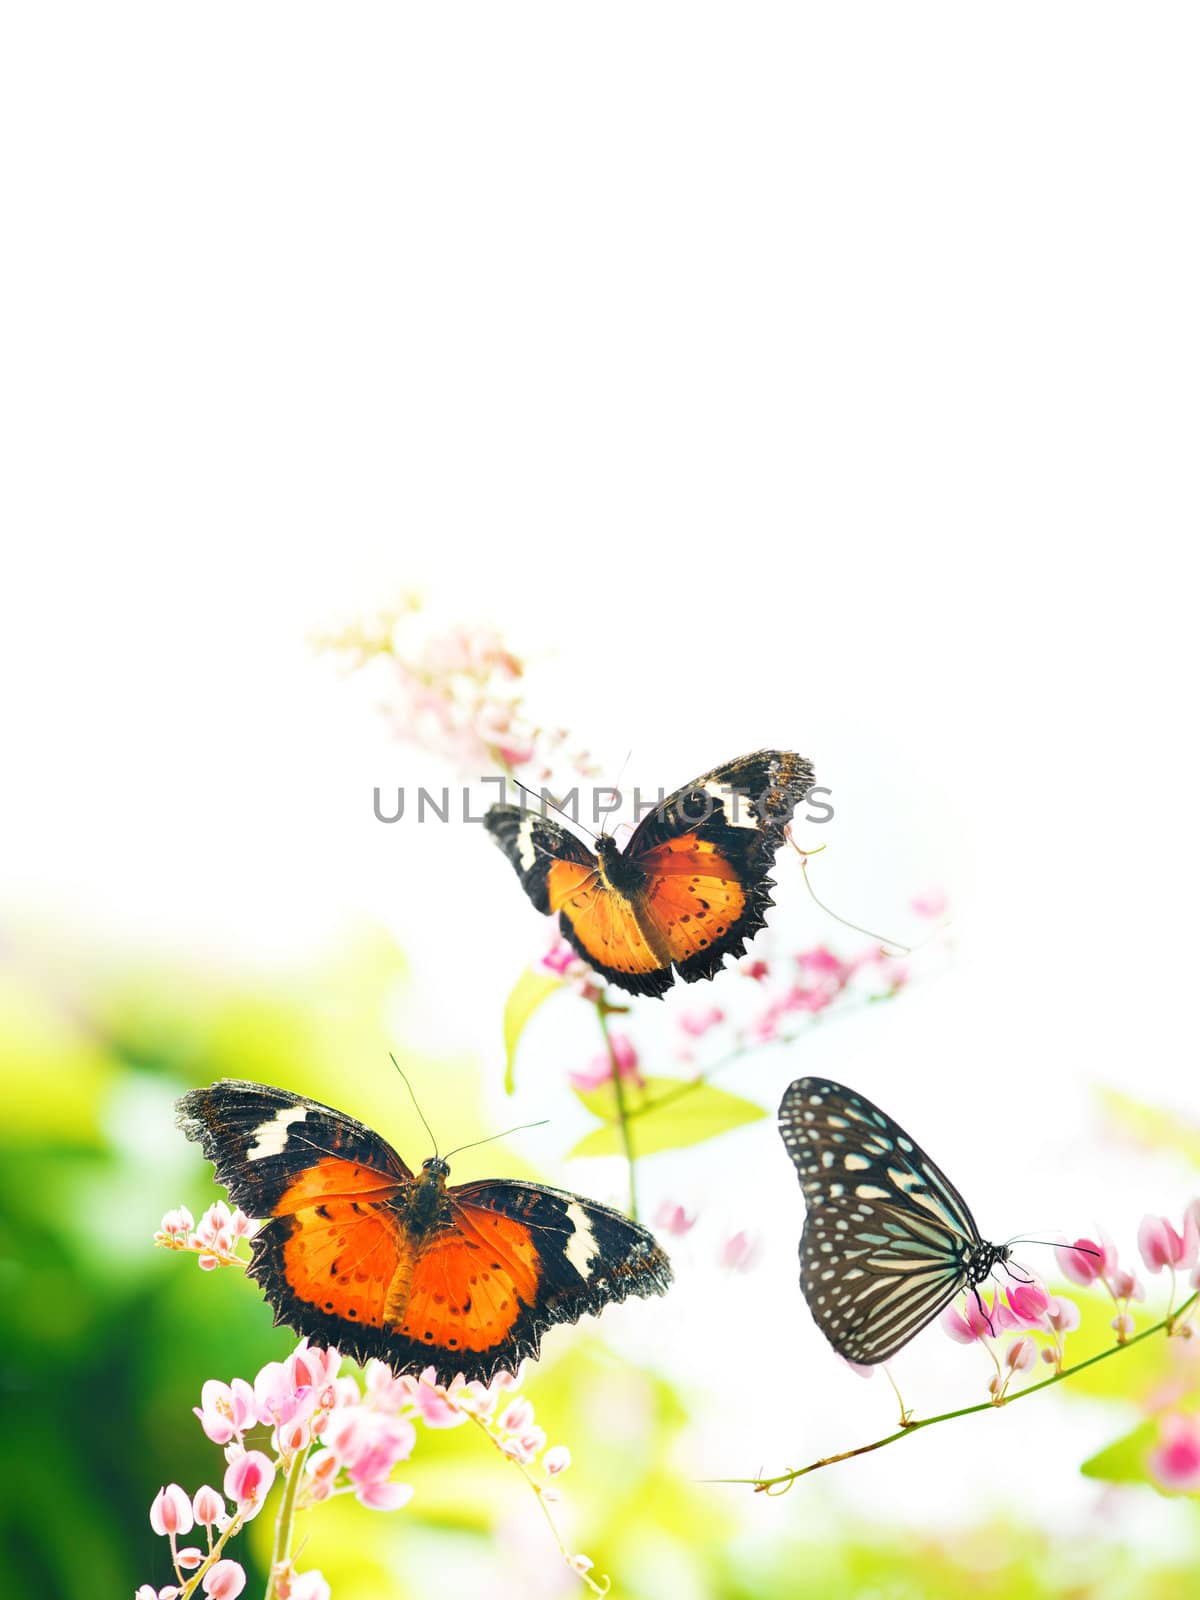 Butterflies on flowers by szefei